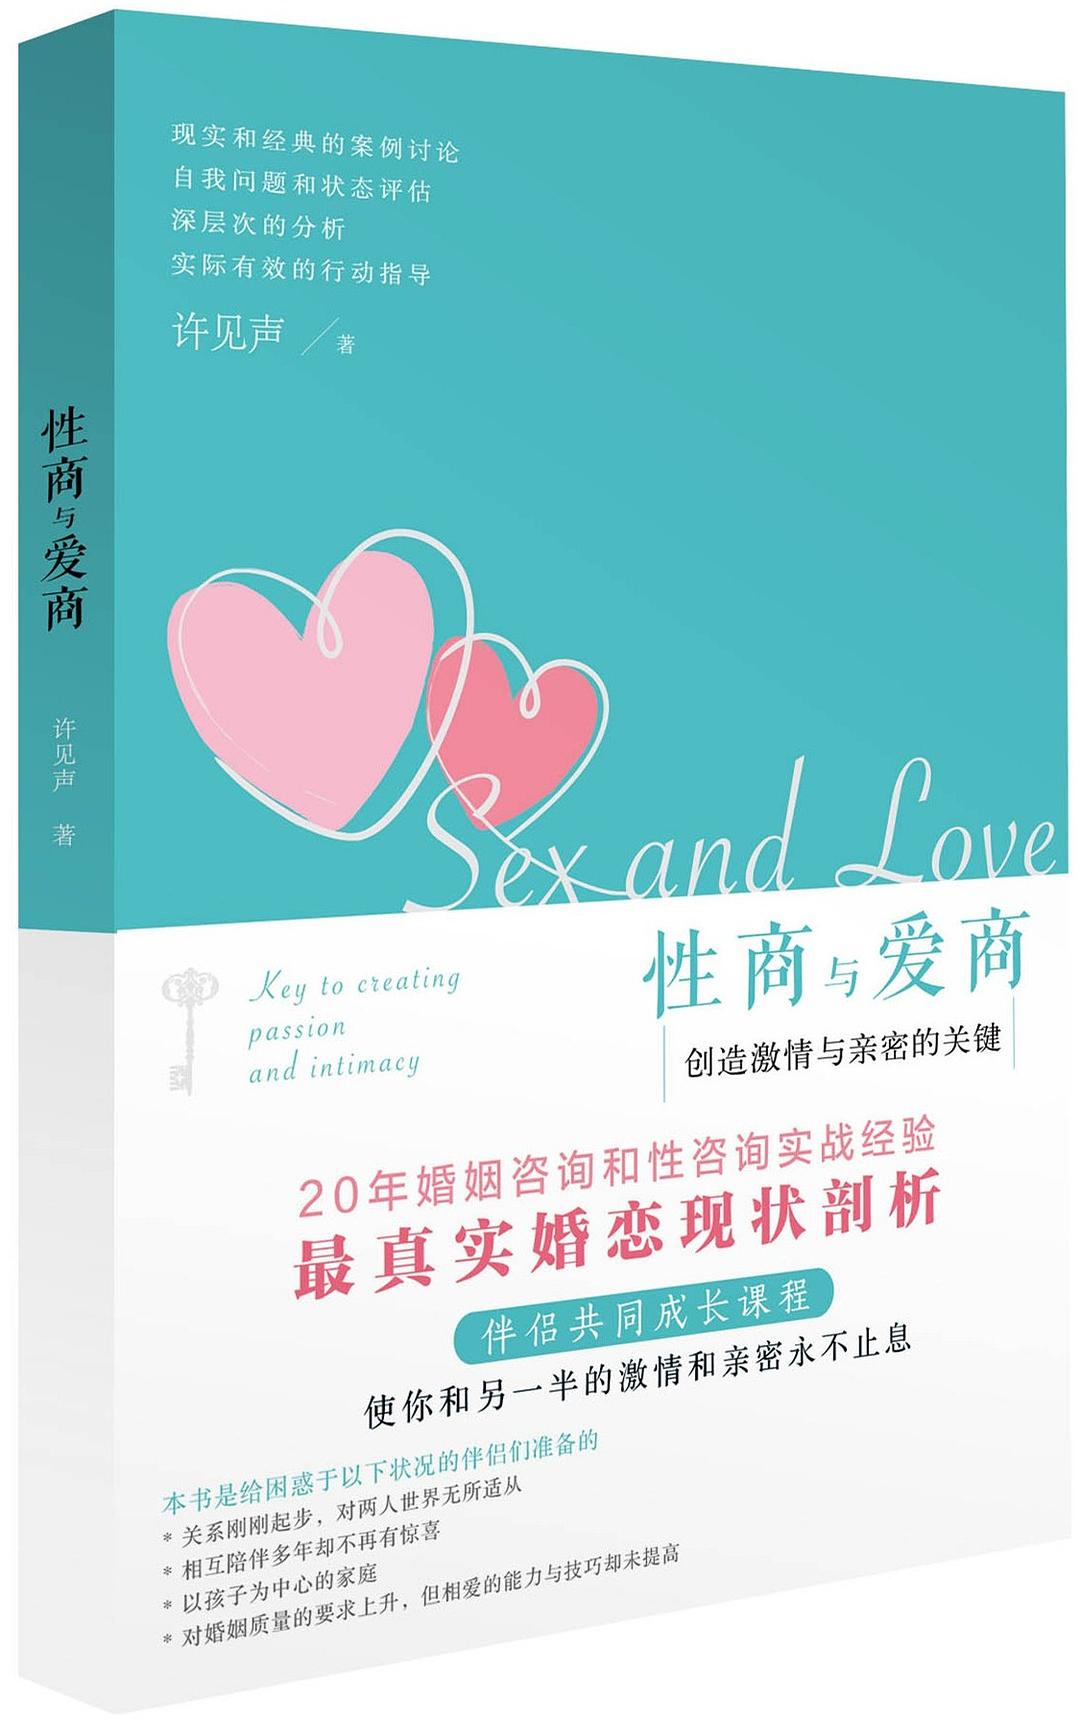 [生活文学] [其它] [网盘下载] 《性商与爱商：创造激情与亲密的关键》使你和另一半的激情和亲密永不止息[PDF]